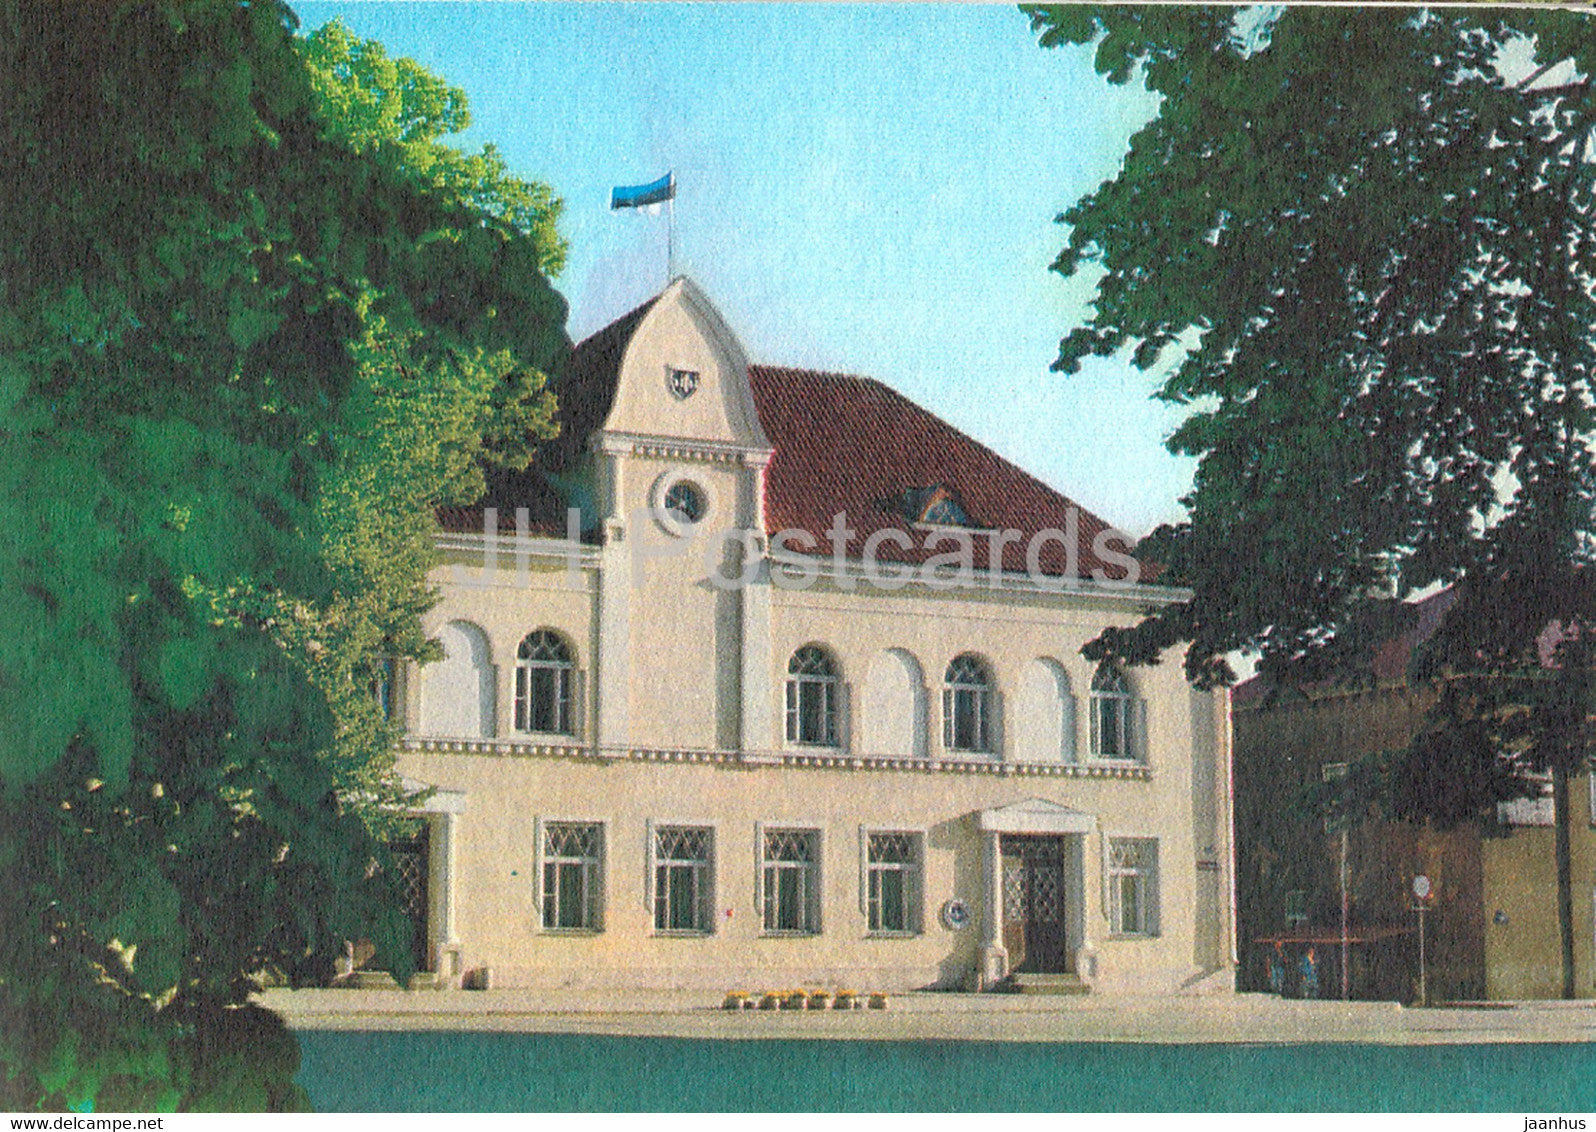 Paide - Town Hall - 1993 - Estonia - unused - JH Postcards